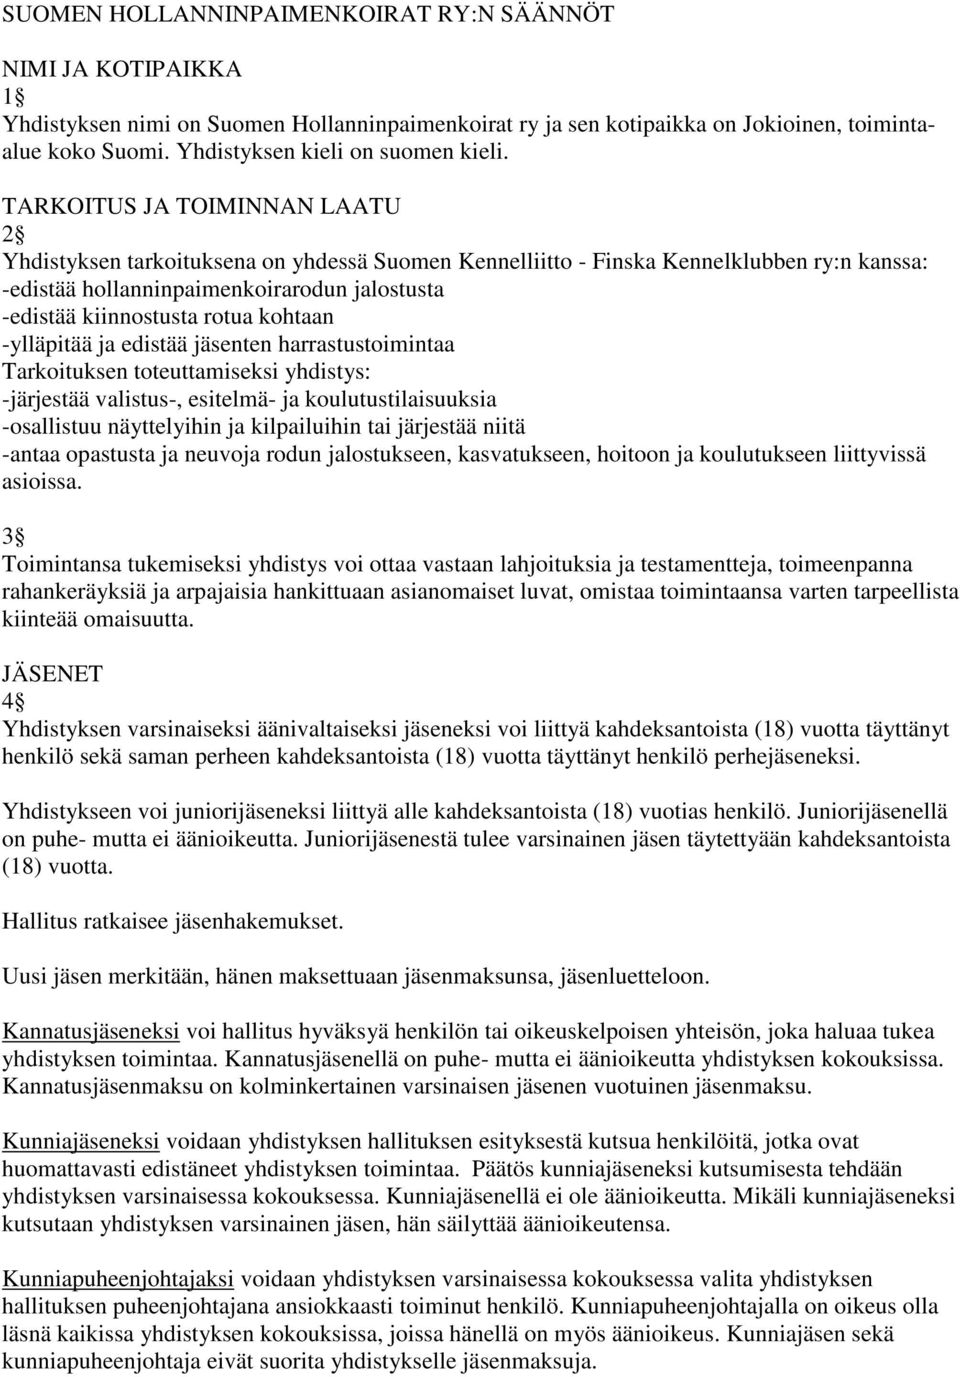 TARKOITUS JA TOIMINNAN LAATU 2 Yhdistyksen tarkoituksena on yhdessä Suomen Kennelliitto - Finska Kennelklubben ry:n kanssa: -edistää hollanninpaimenkoirarodun jalostusta -edistää kiinnostusta rotua